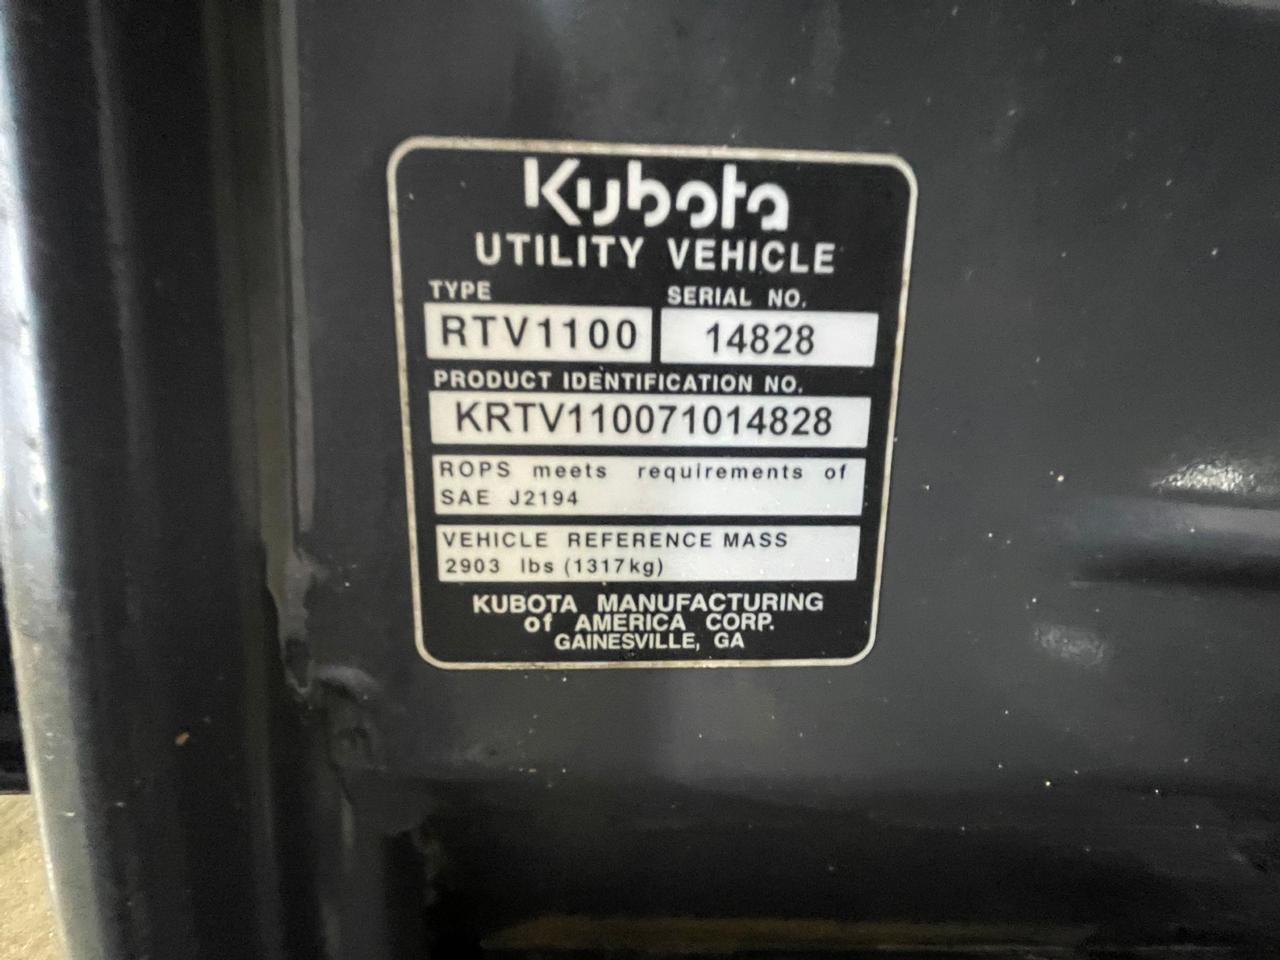 2009 Kubota RTV1100 Utility Vehicle